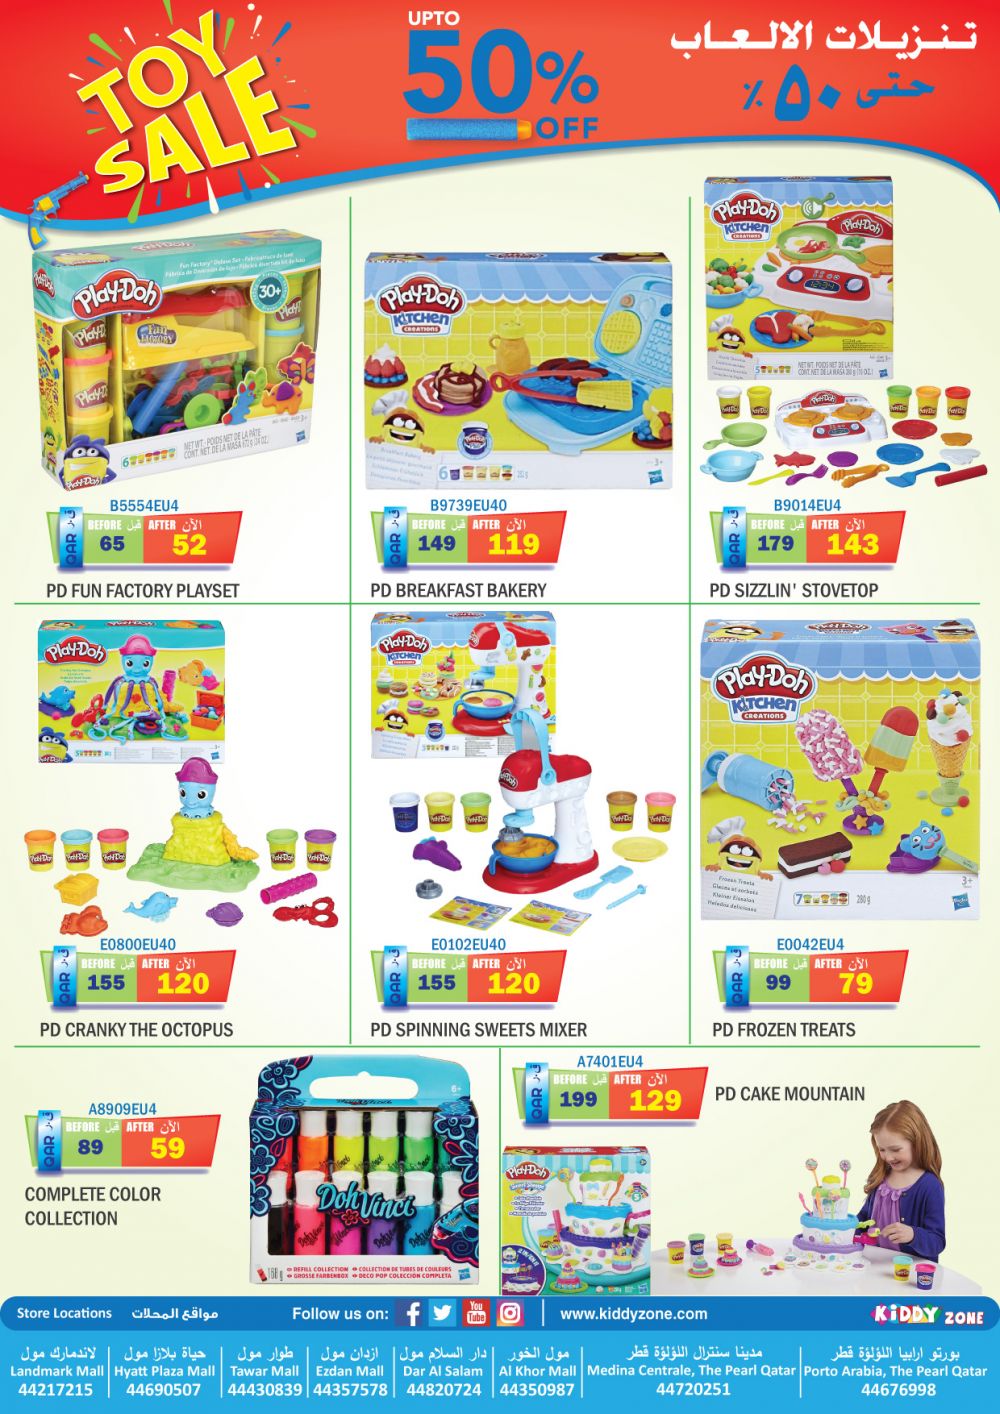 Toy Sale up to 50%- Kiddy Zone Qatar